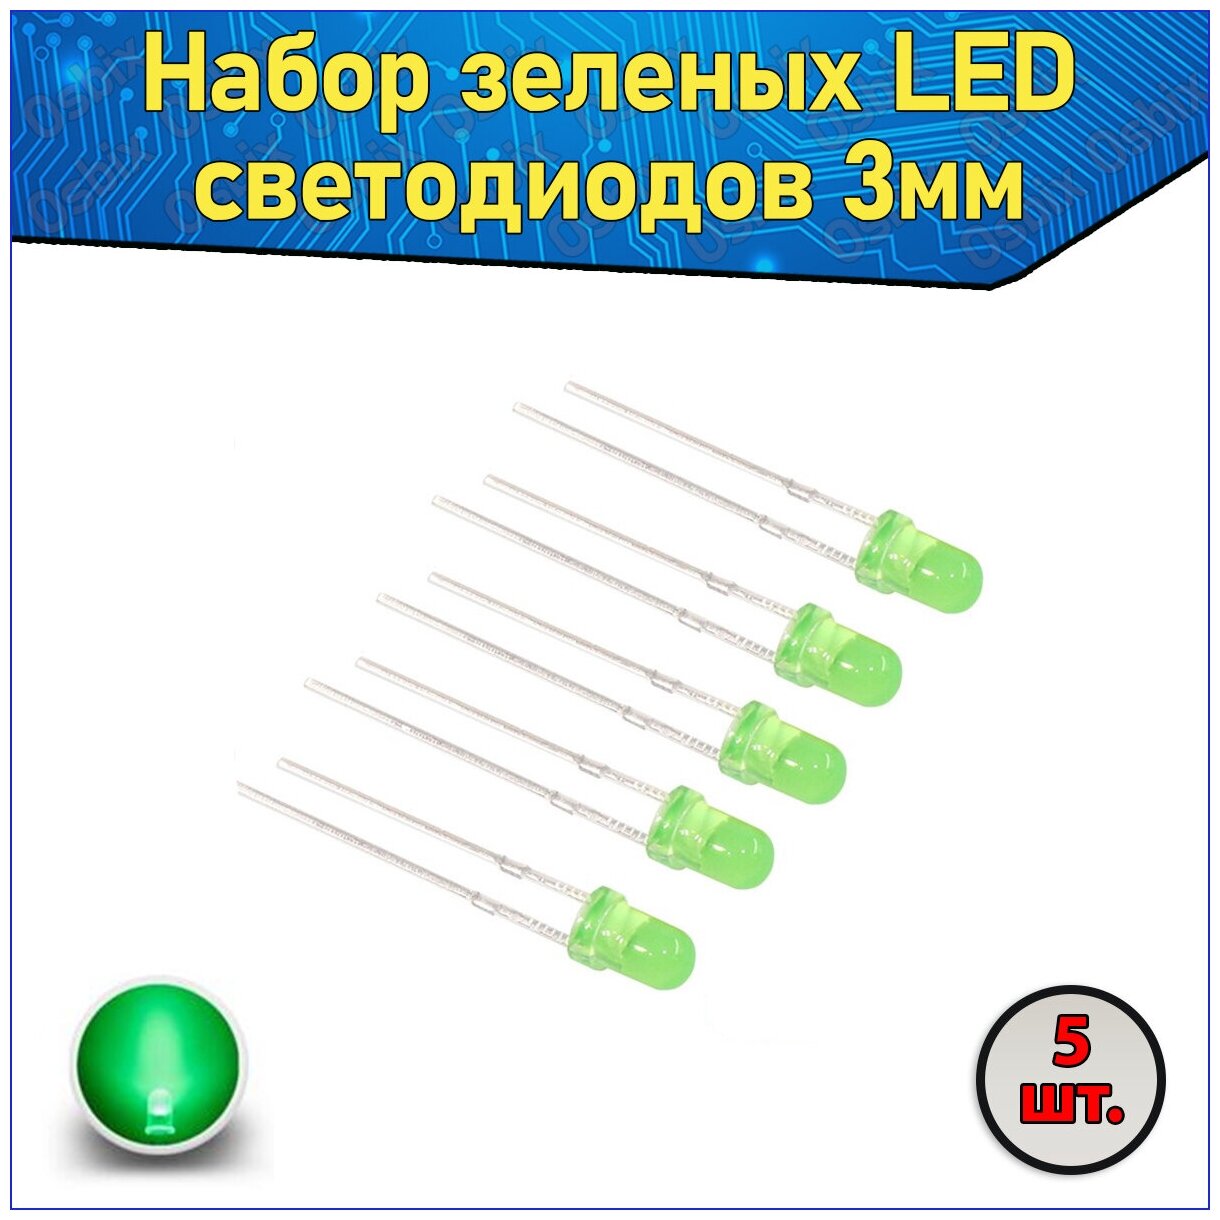 Набор зеленых LED светодиодов 3мм